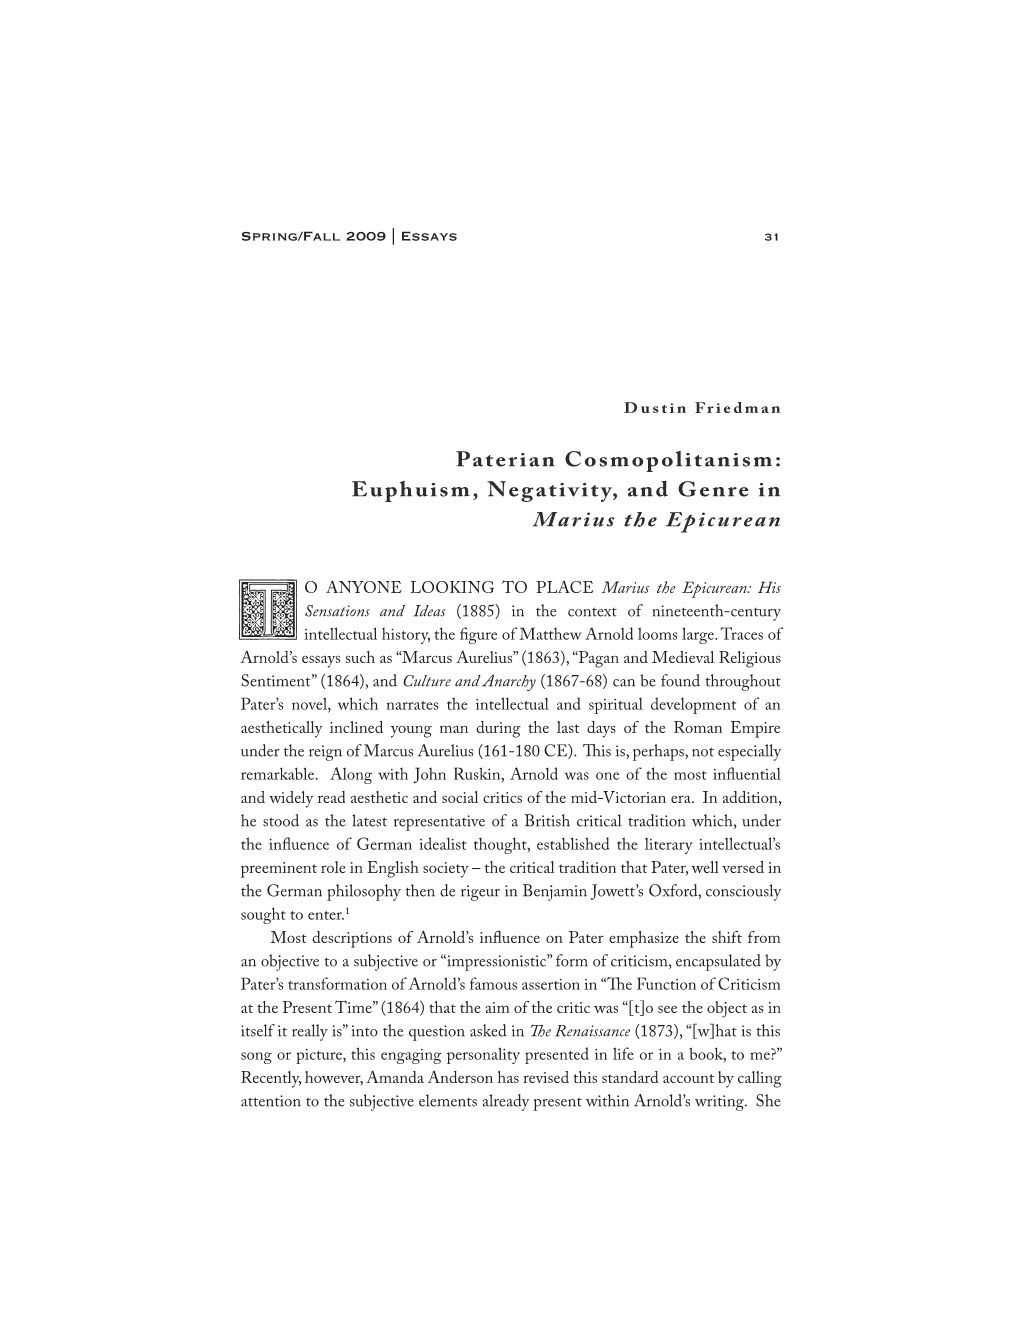 Paterian Cosmopolitanism: Euphuism, Negativity, and Genre in Marius the Epicurean